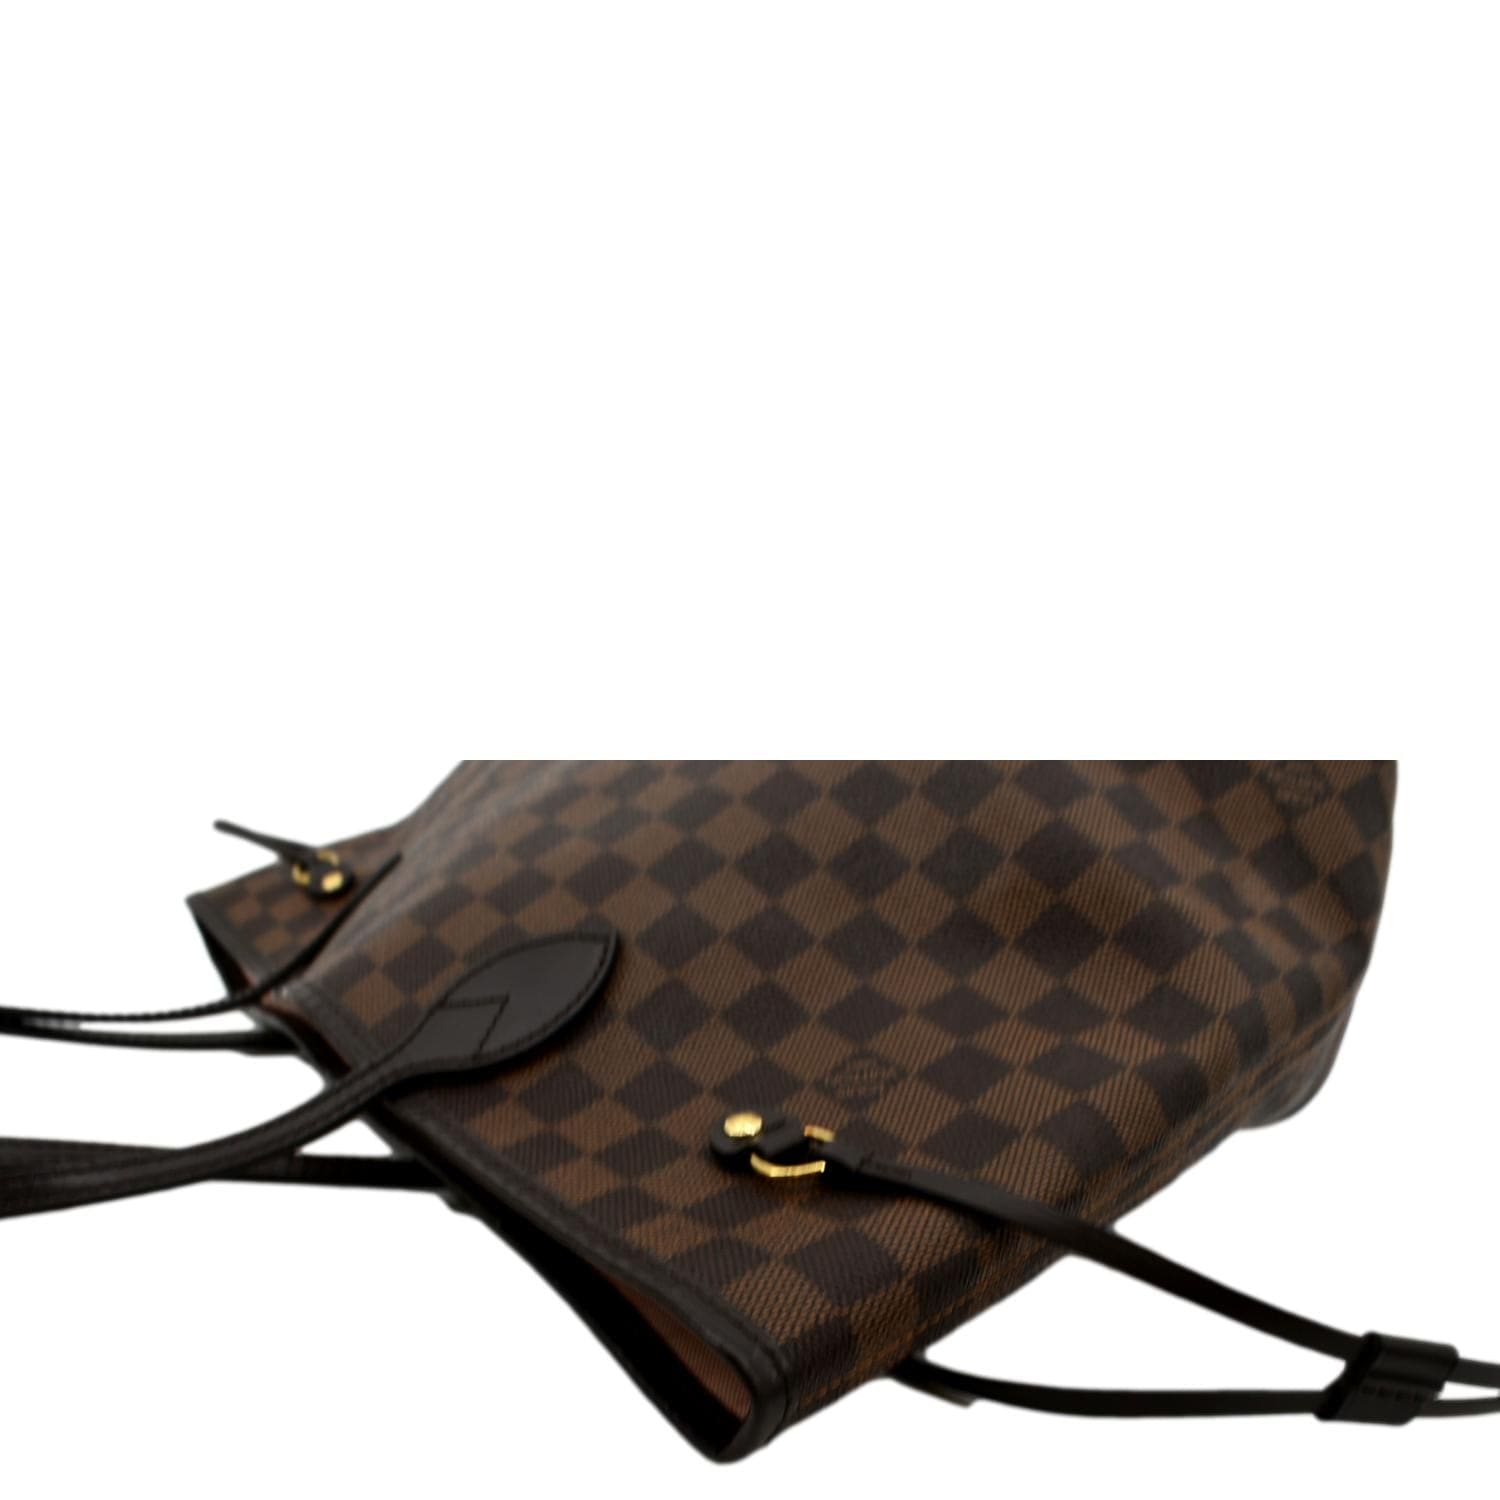 Louis - Vuitton - M40156 – dct - MM - Bag - Neverfull - Brown